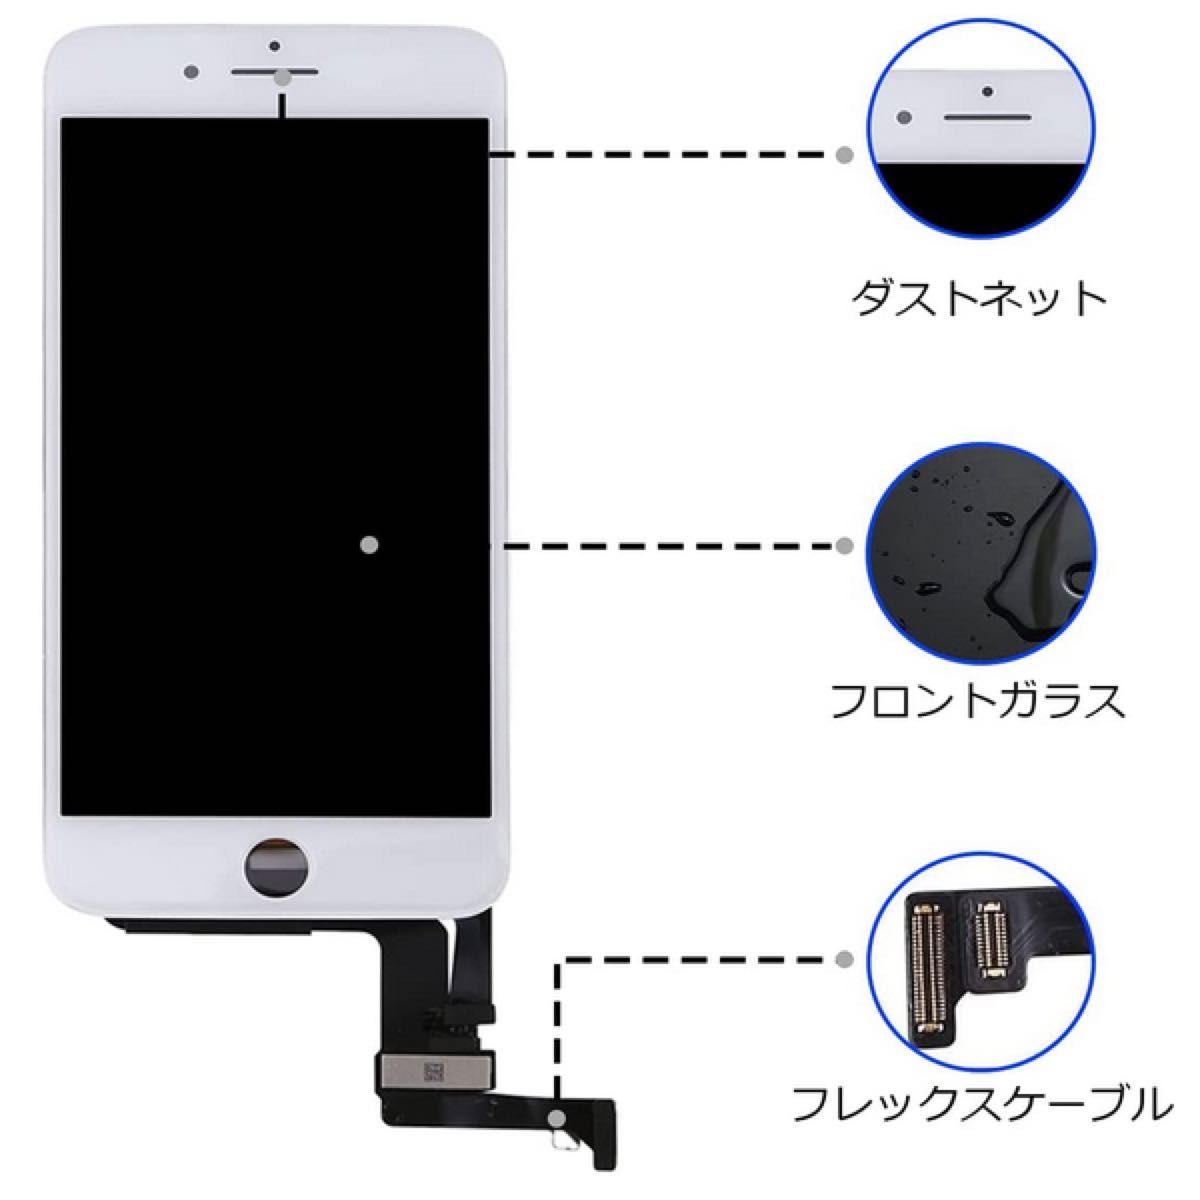 【新品】iPhone8/SE2/SE3白 フロントパネル 画面修理交換 工具付